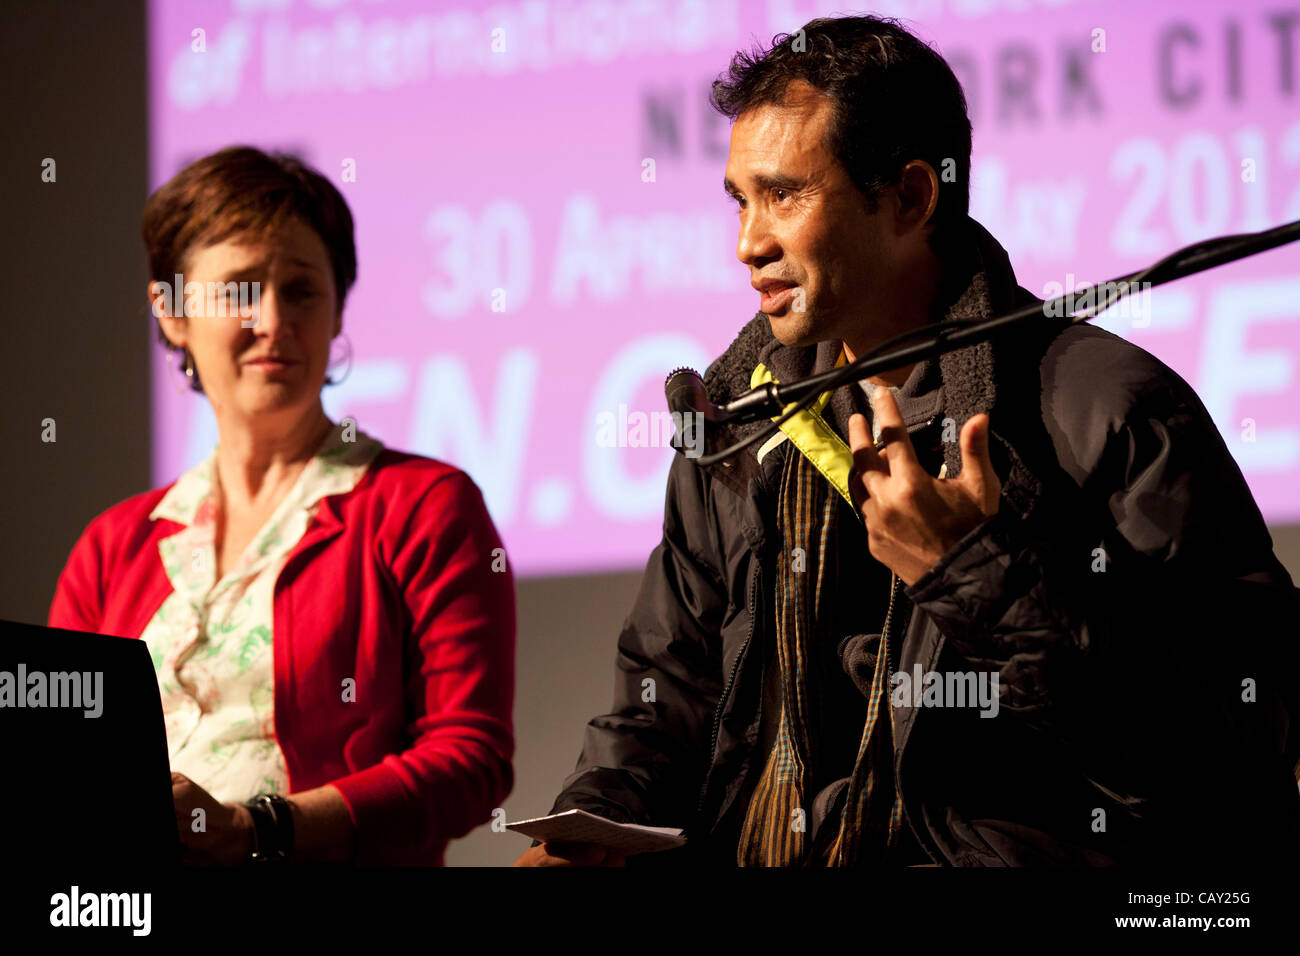 D'experts sur les droits des enfants au PEN World Voices Festival, New York, NY, le 5 mai 2012, avec co-auteurs Patricia McCormack (L) et l'ancien enfant soldat cambodgien Arn Chorn-Pond (R). Banque D'Images